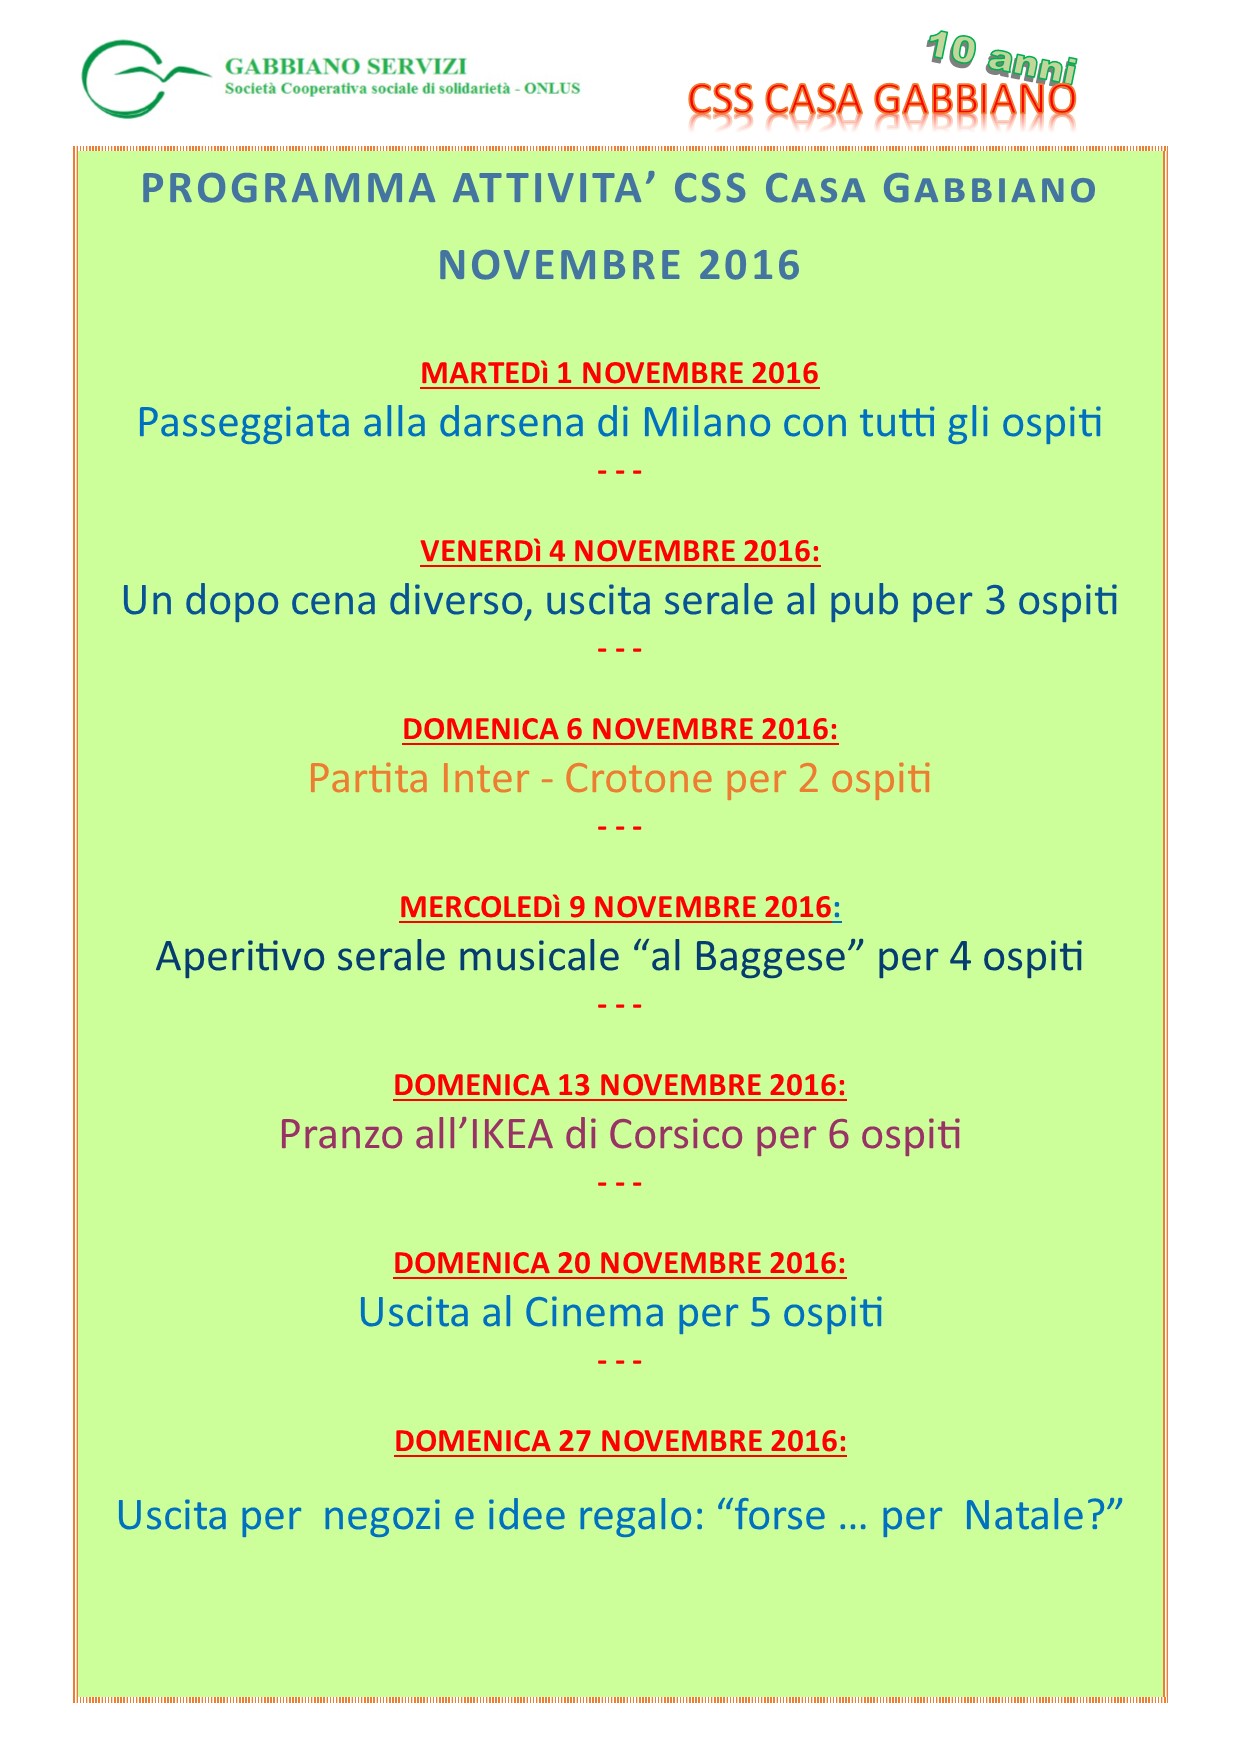 programma-attivita-css-novembre-2016